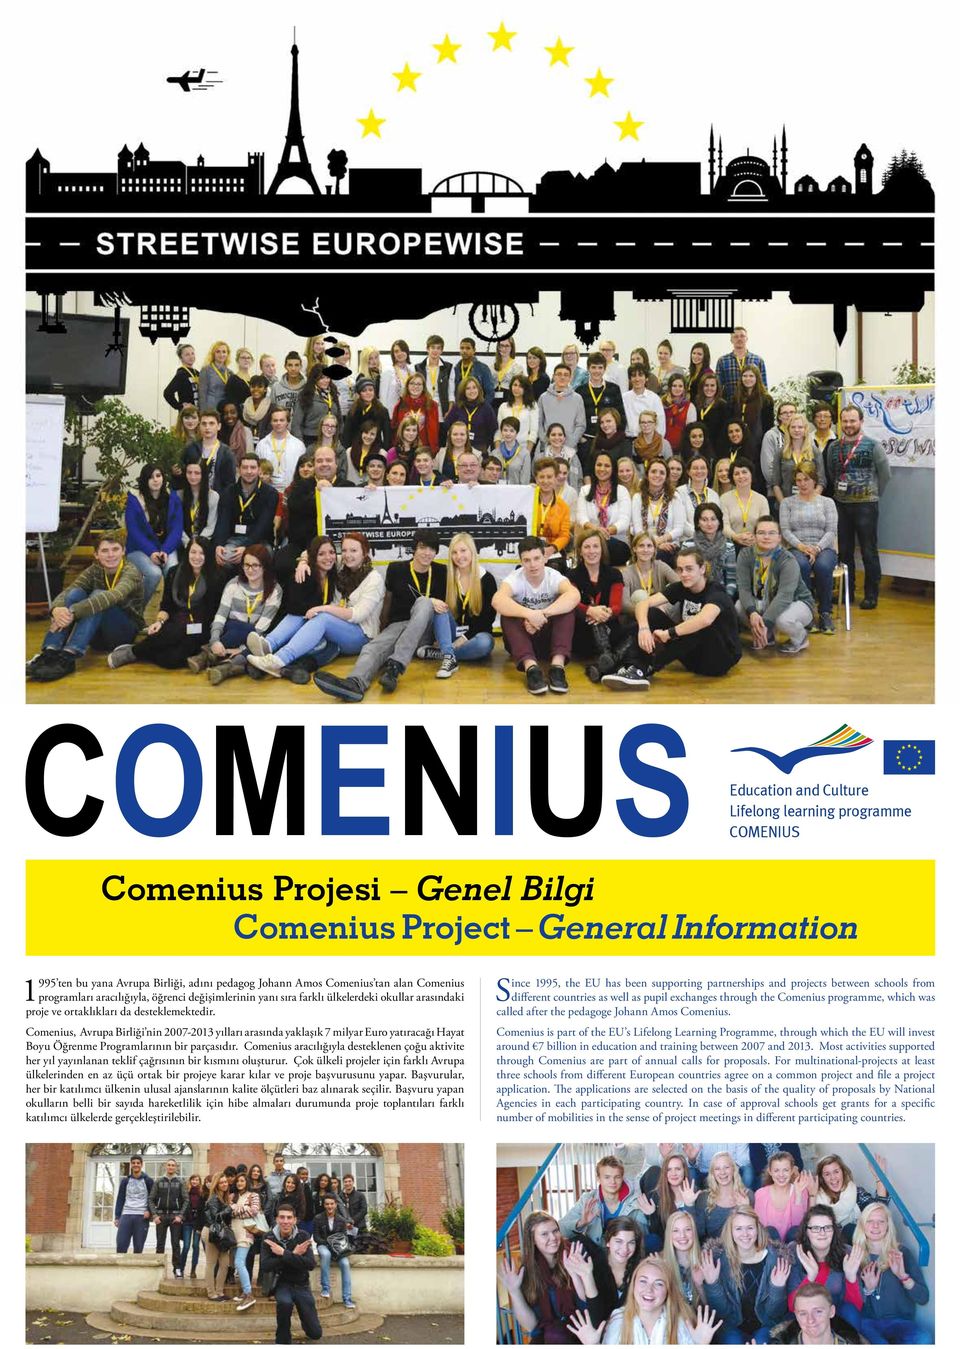 Comenius, Avrupa Birliği nin 2007-2013 yılları arasında yaklaşık 7 milyar Euro yatıracağı Hayat Boyu Öğrenme Programlarının bir parçasıdır.